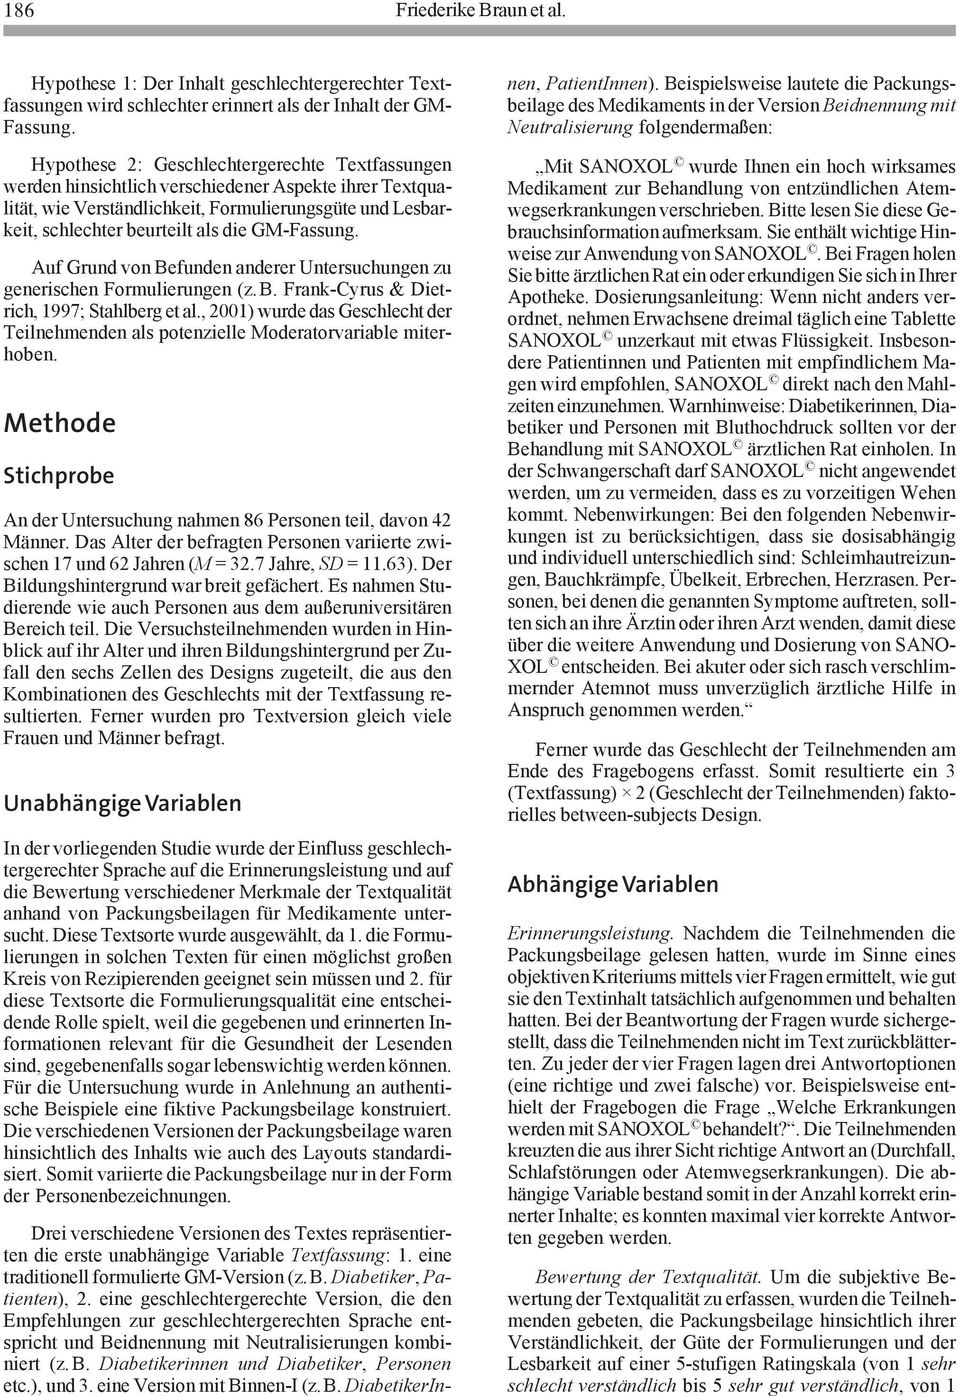 GM-Fassung. Auf Grund von Befunden anderer Untersuchungen zu generischen Formulierungen (z.b. Frank-Cyrus & Dietrich, 1997; Stahlberg et al.